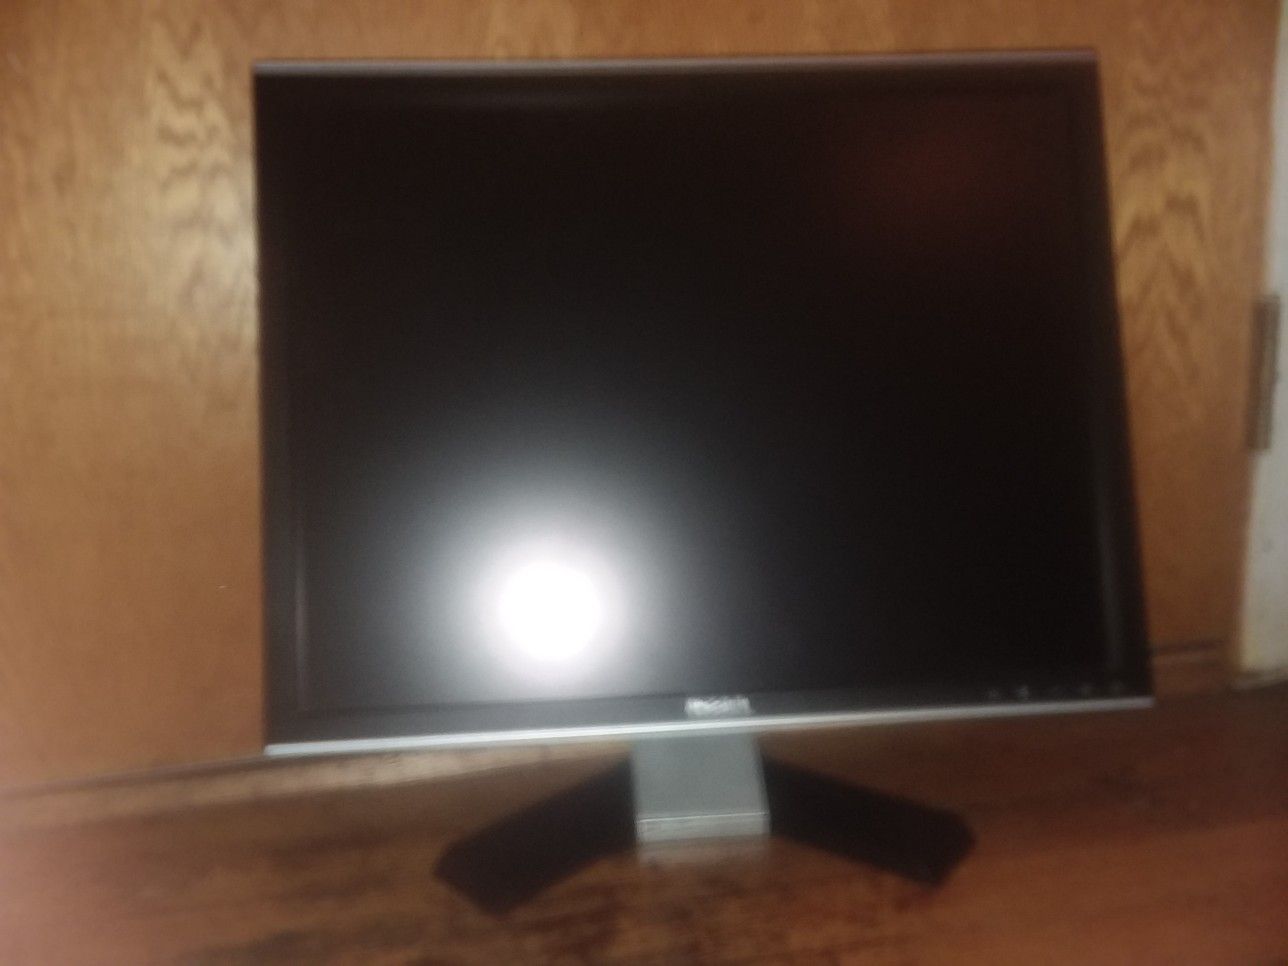 Dell 20 inch monitor